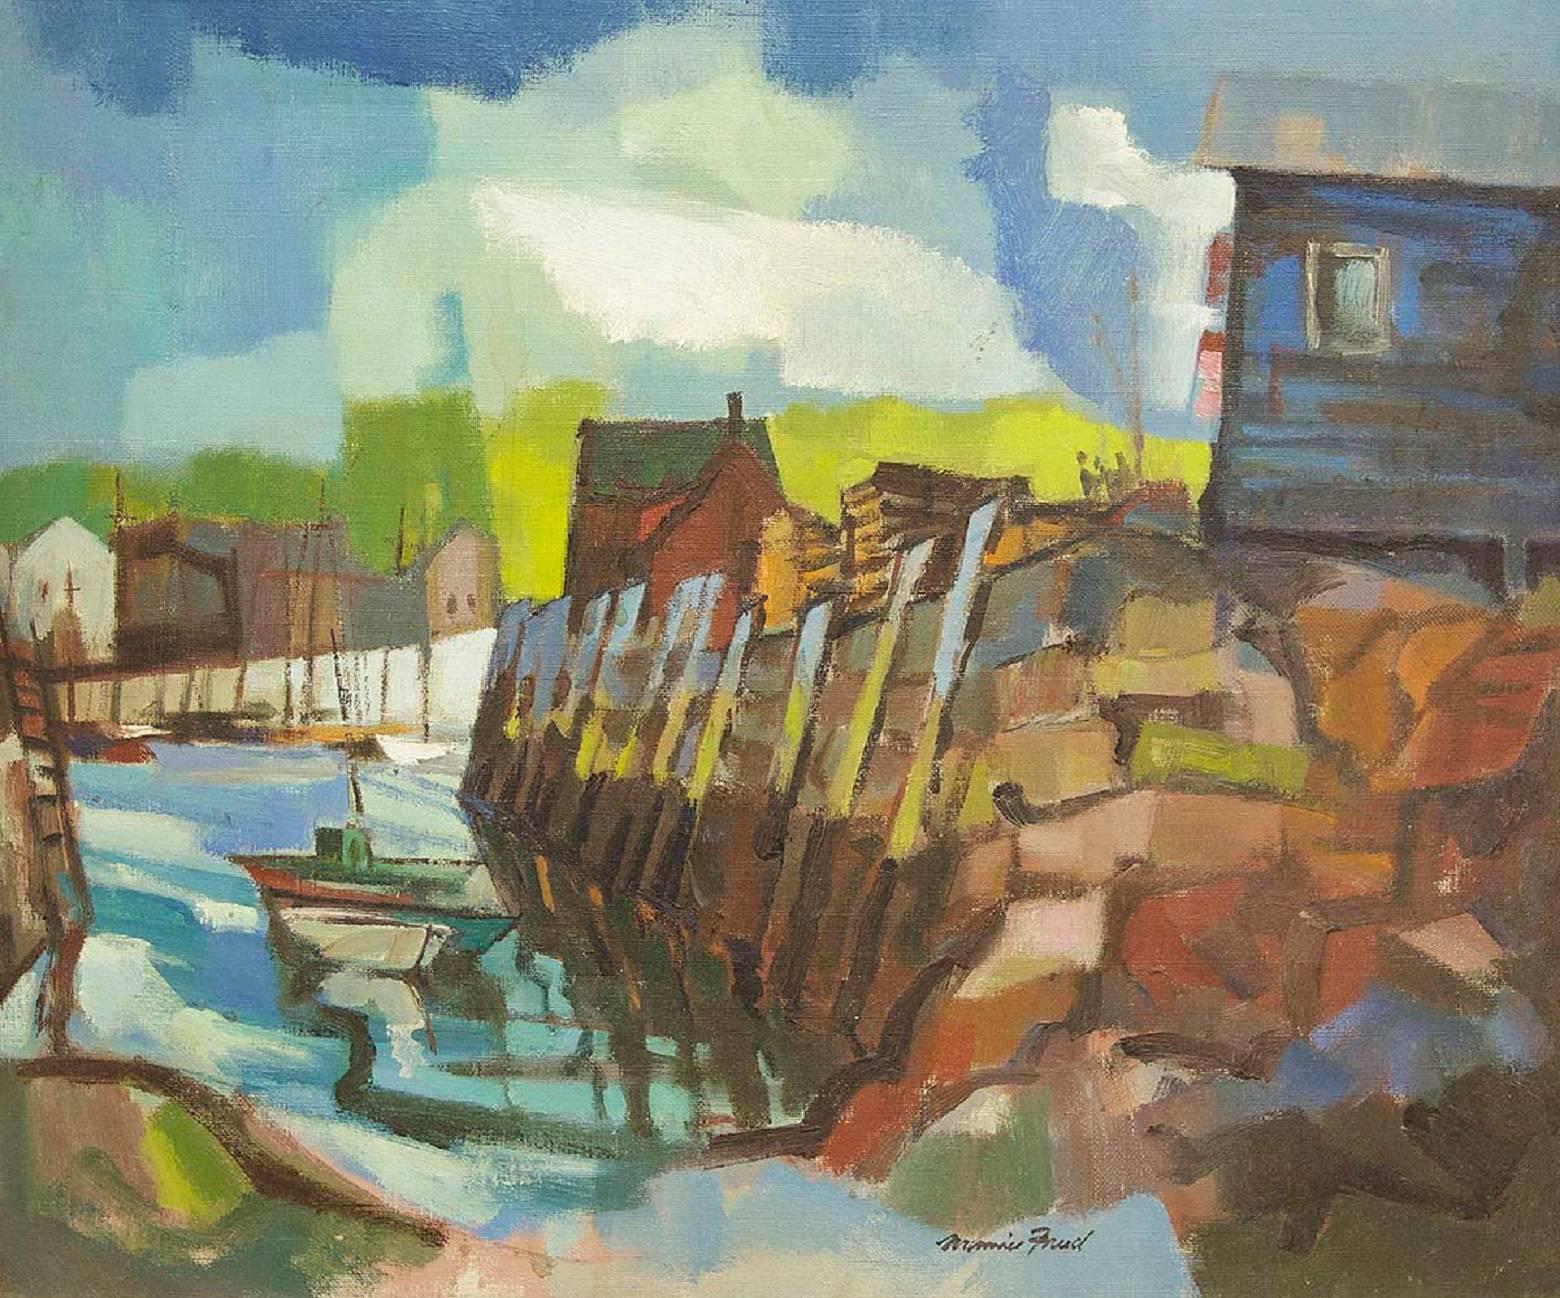 Landscape Painting Maurice Freed - Paysage moderniste avec bateau de pêche